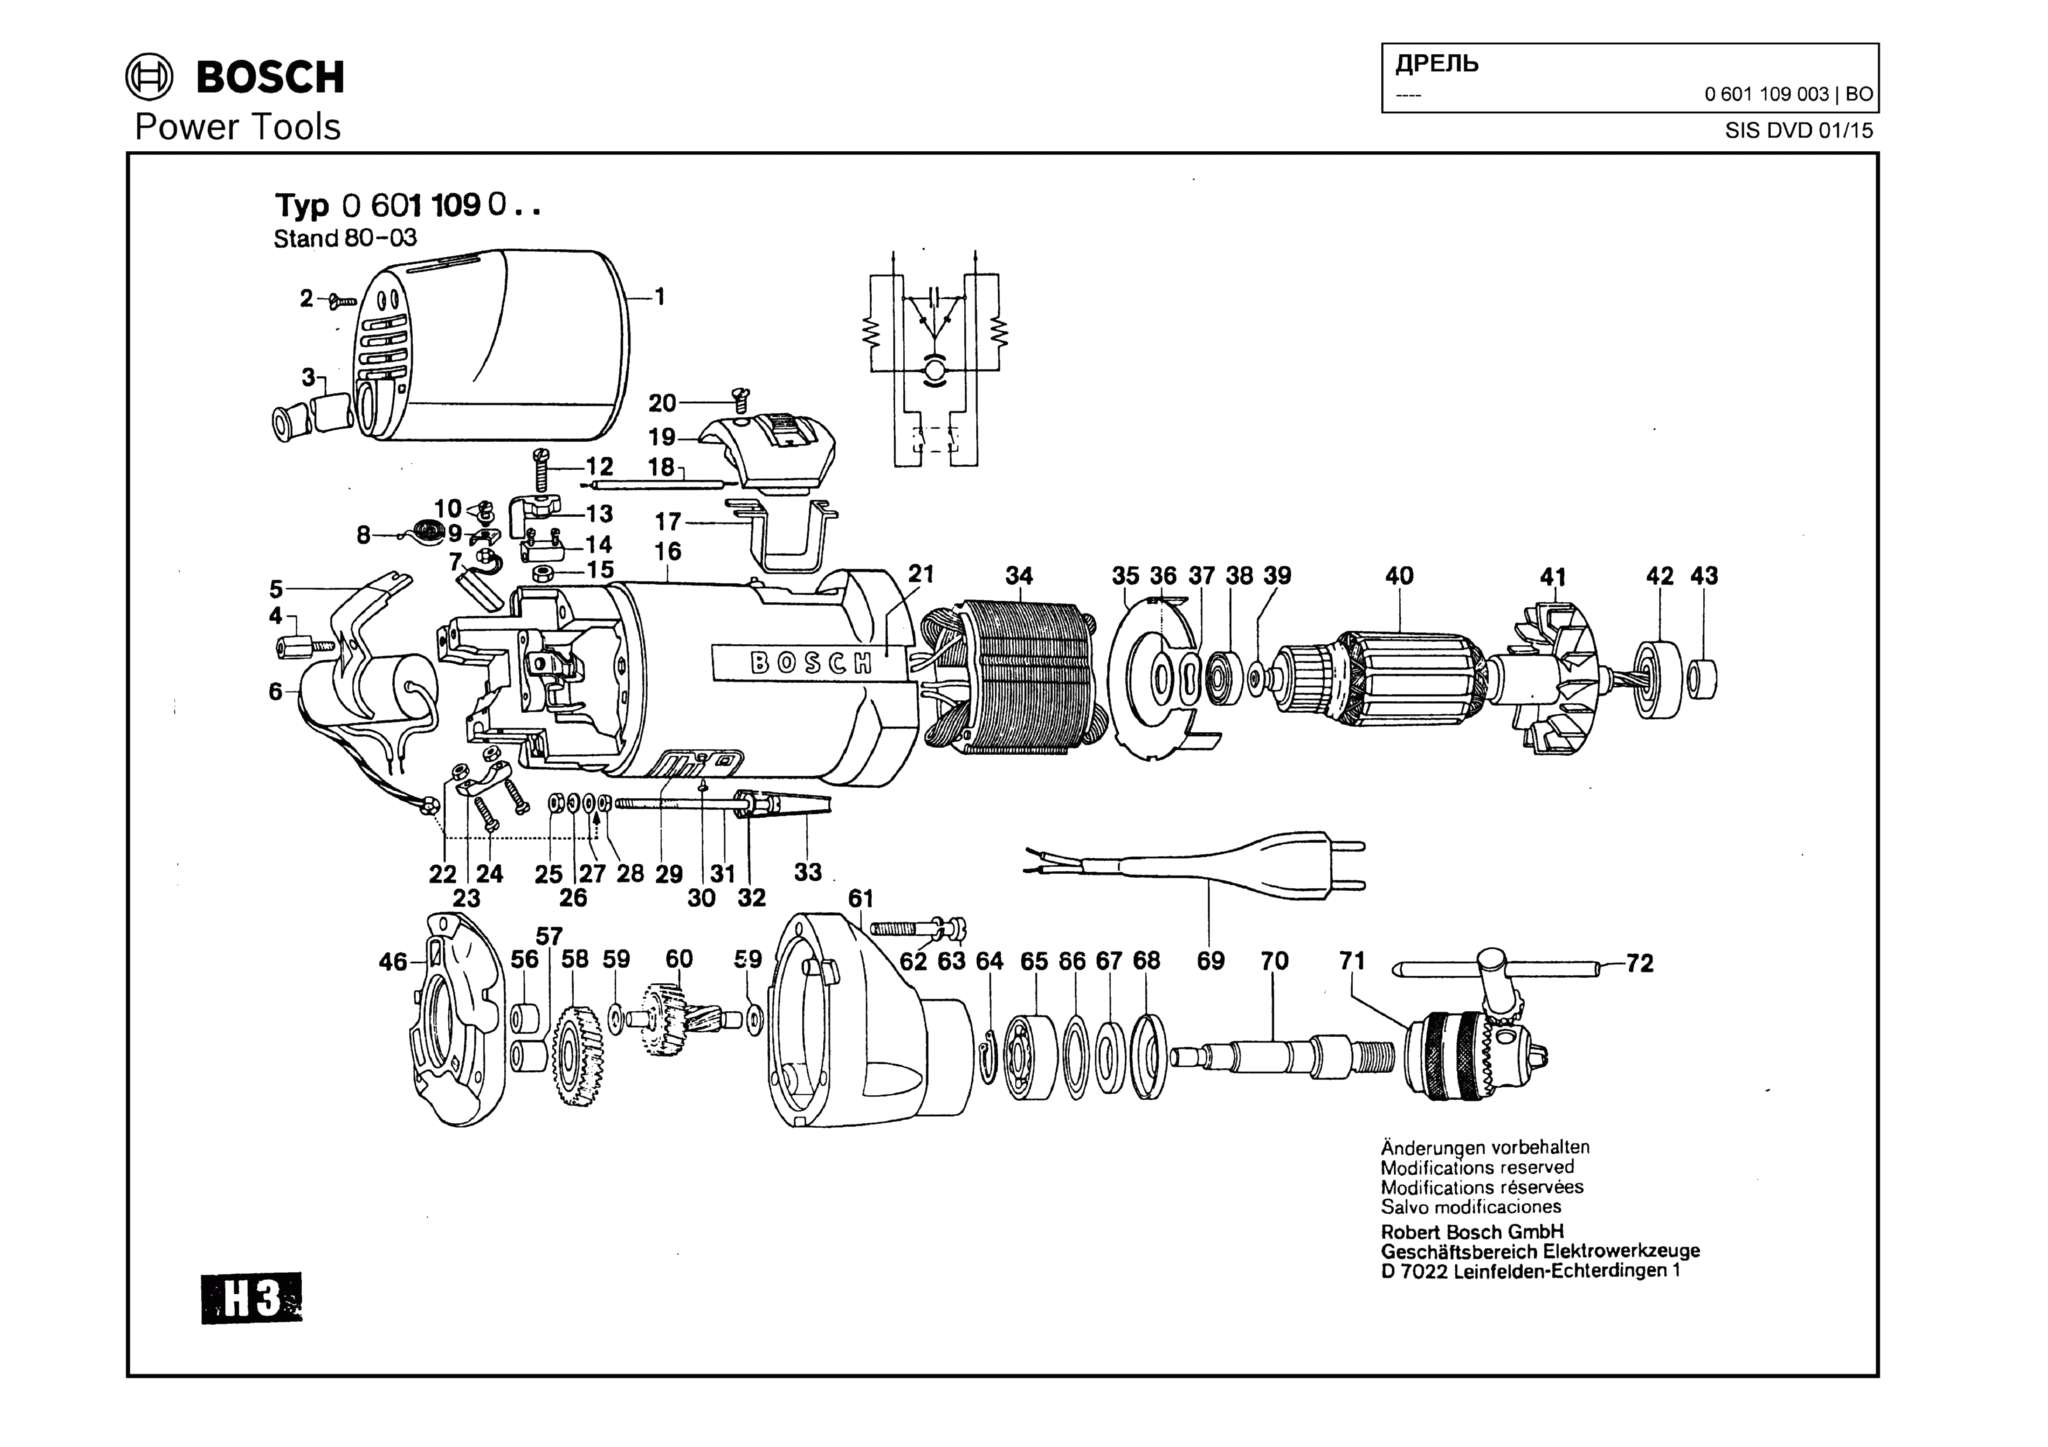 Запчасти, схема и деталировка Bosch (ТИП 0601109003)